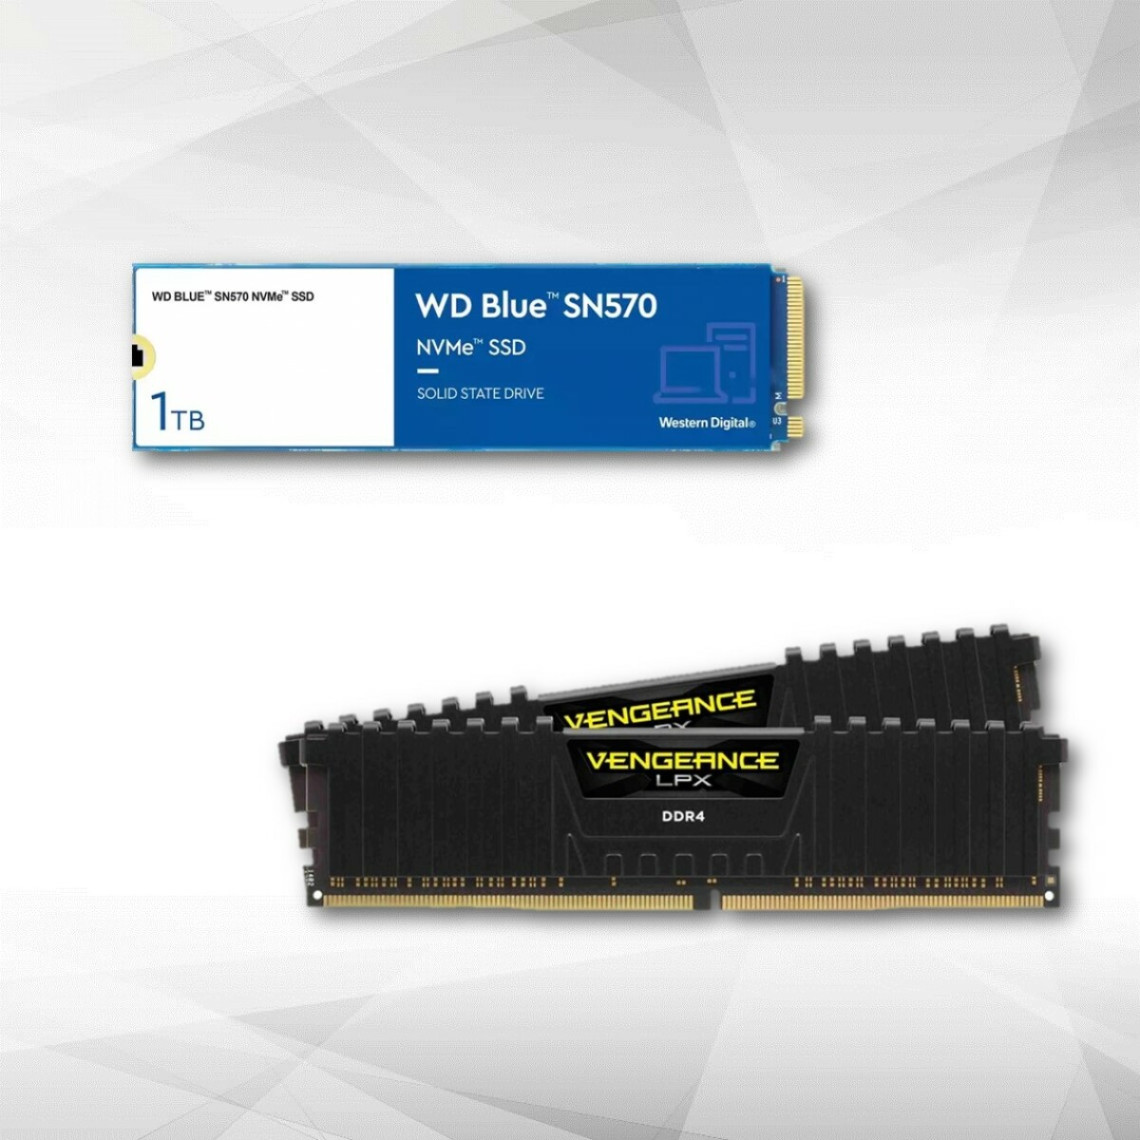 Disque SSD NVMe™ WD Blue SN570 1 To Vengeance LPX 2 x 16 Go DDR4 3200 MHz Noir